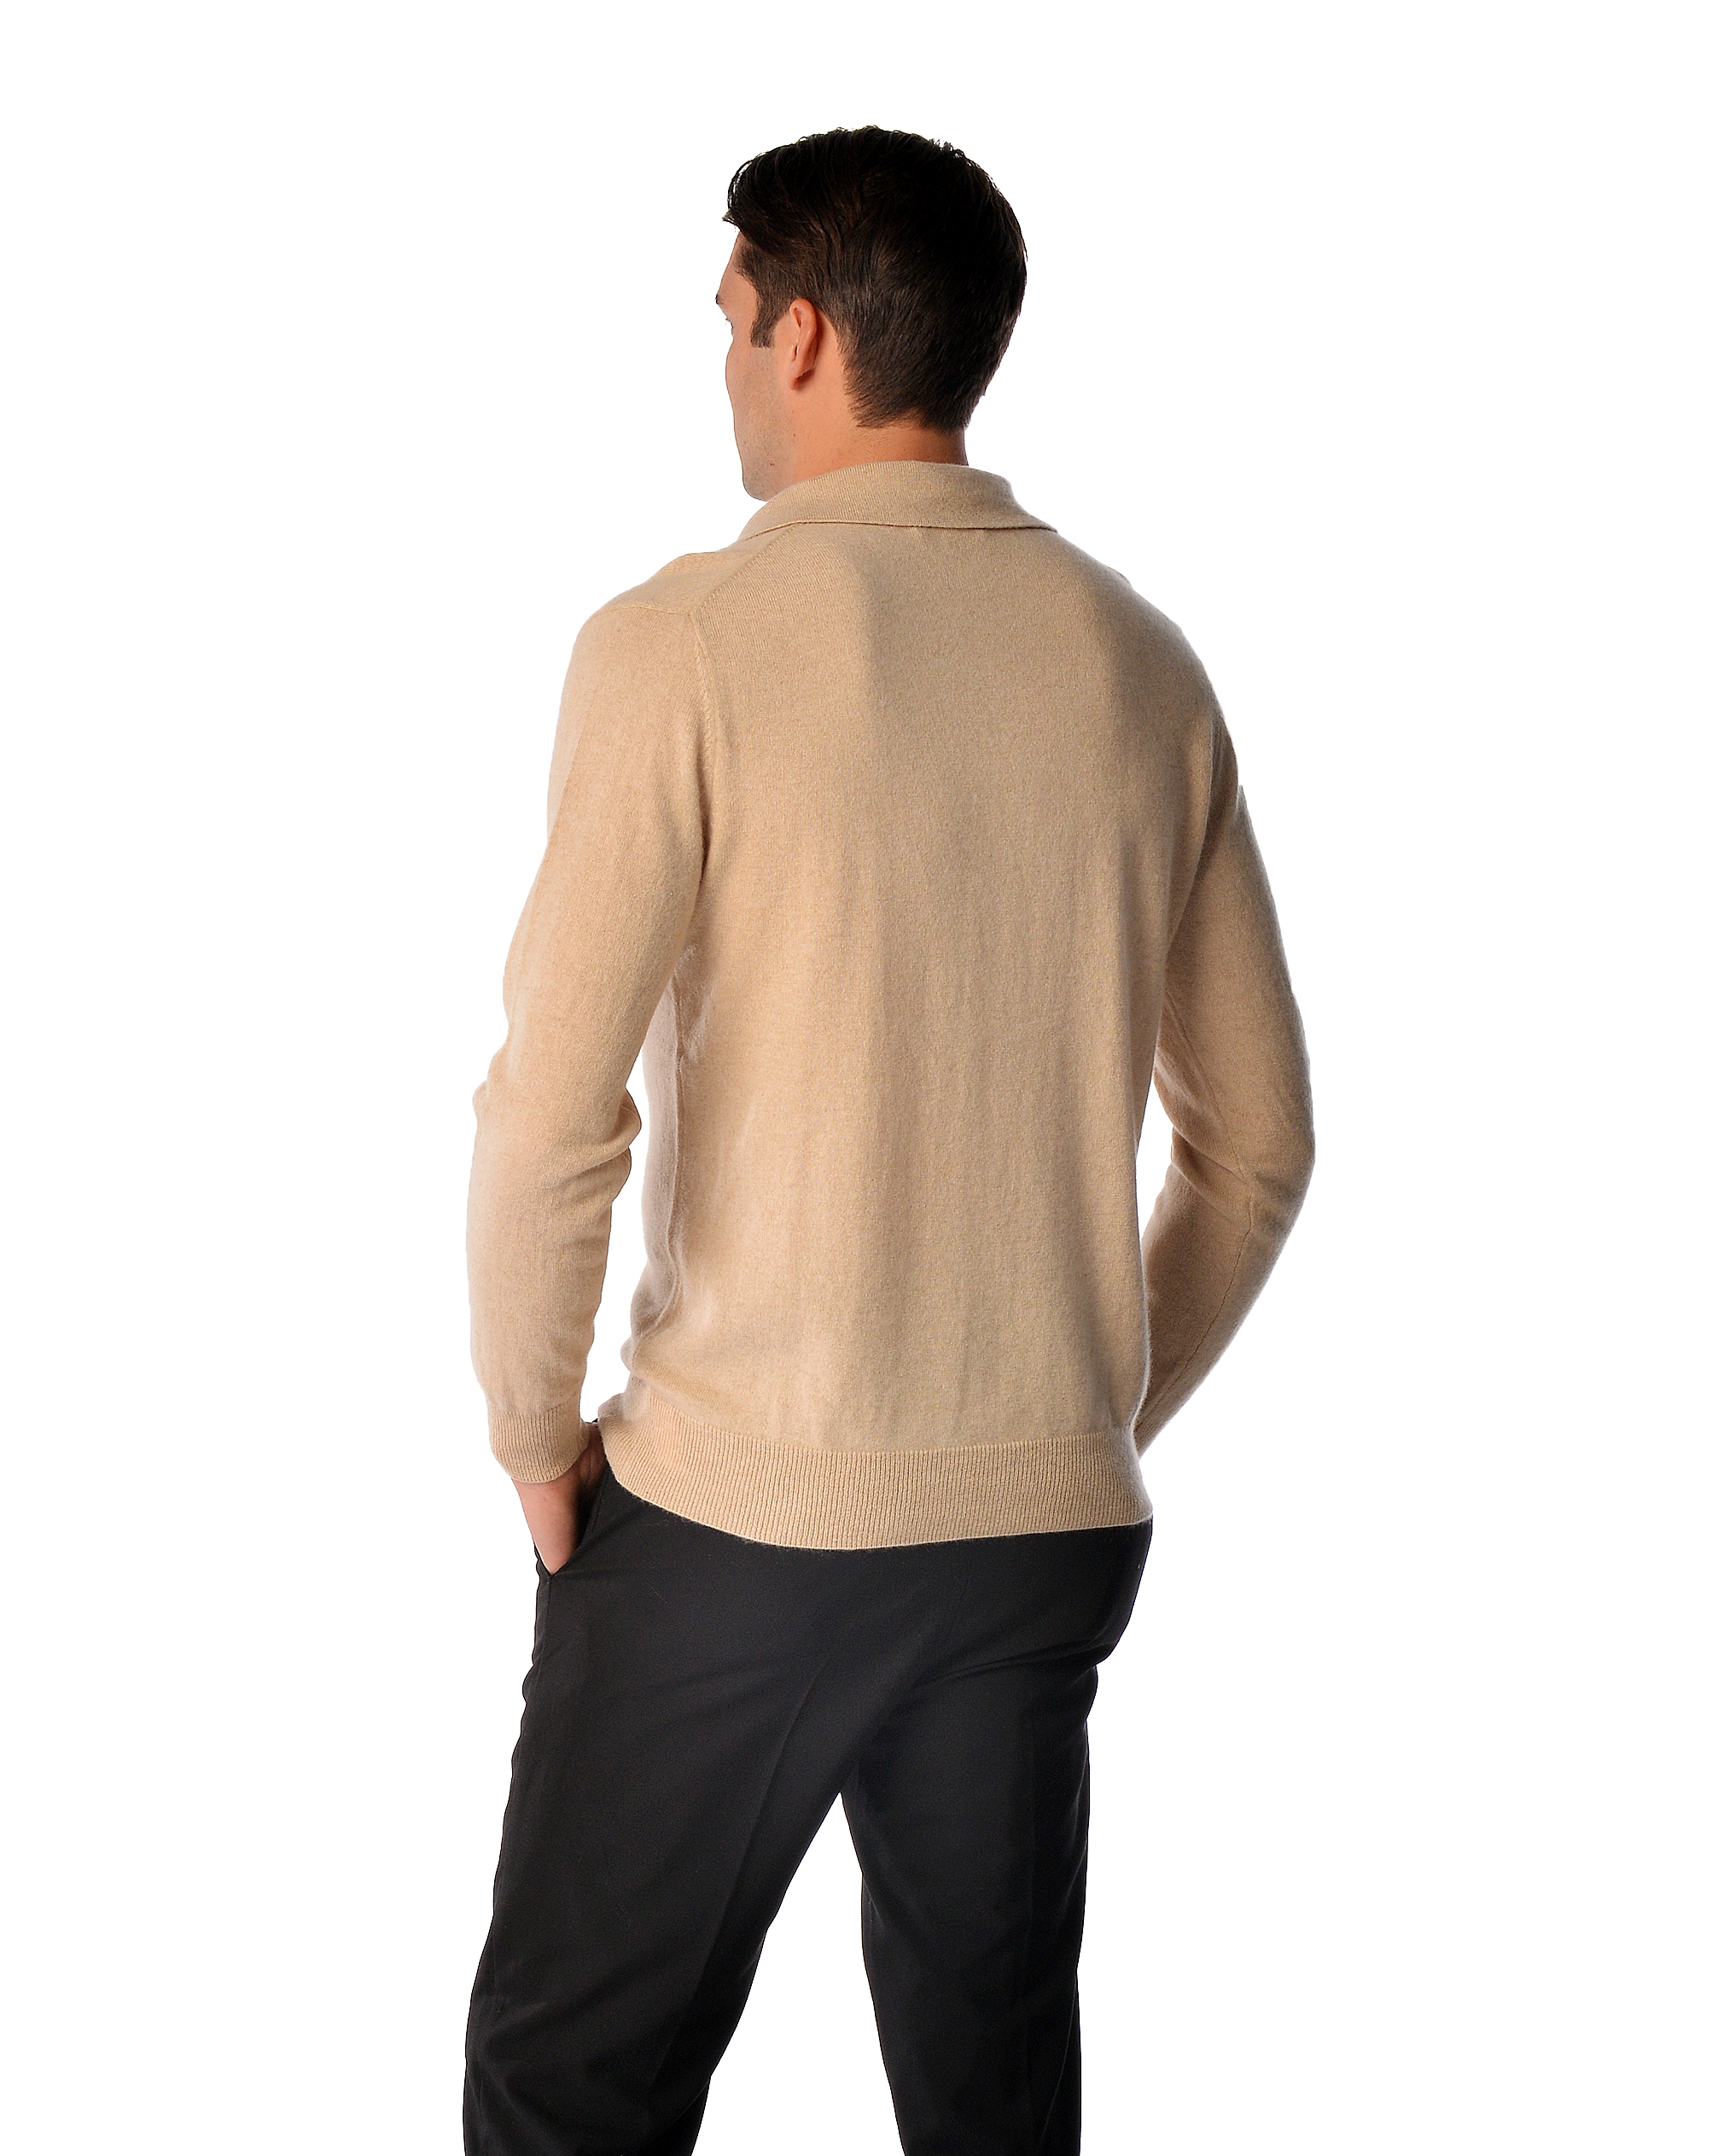 Men\'s Pure Cashmere Polo Sweater (Black, Medium)